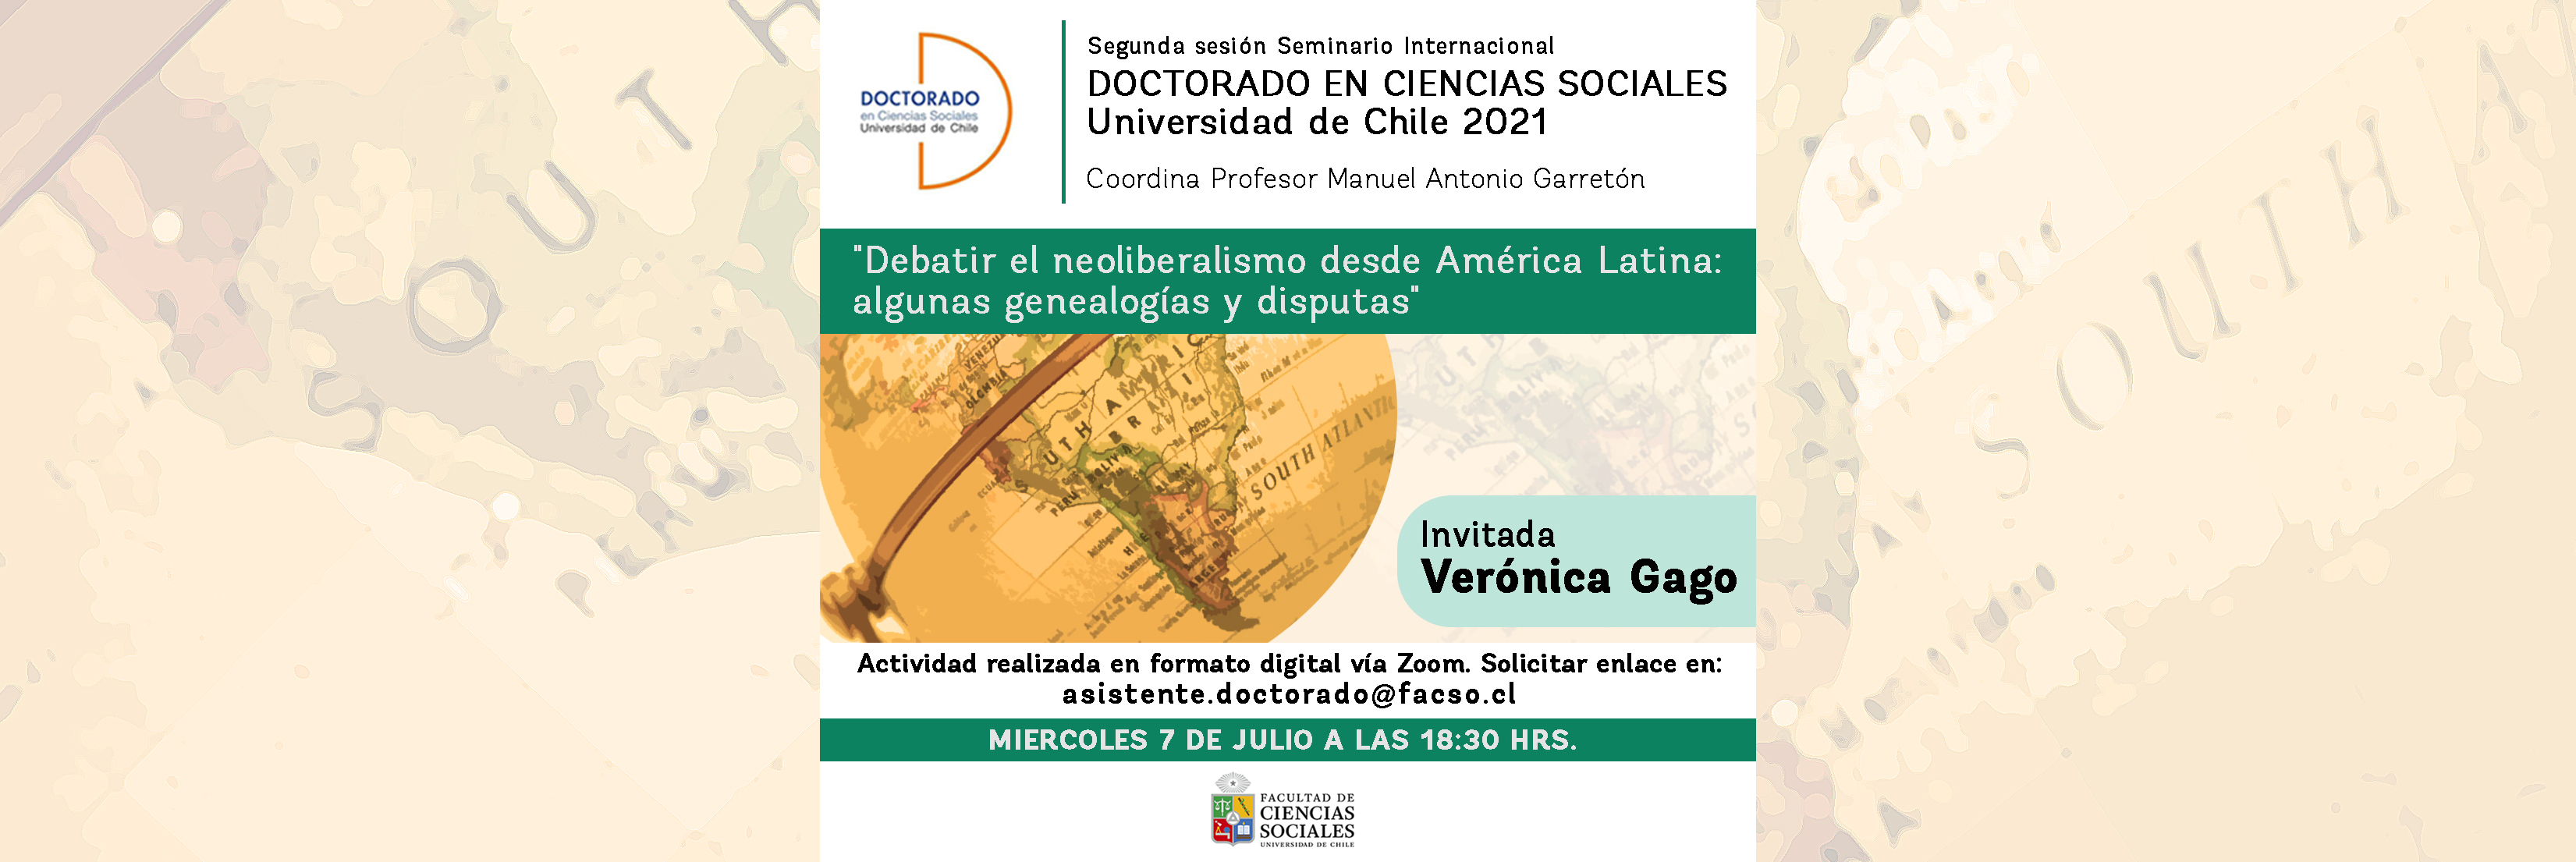 Segunda sesión del seminario Internacional del Doctorado en Ciencias Sociales 2021